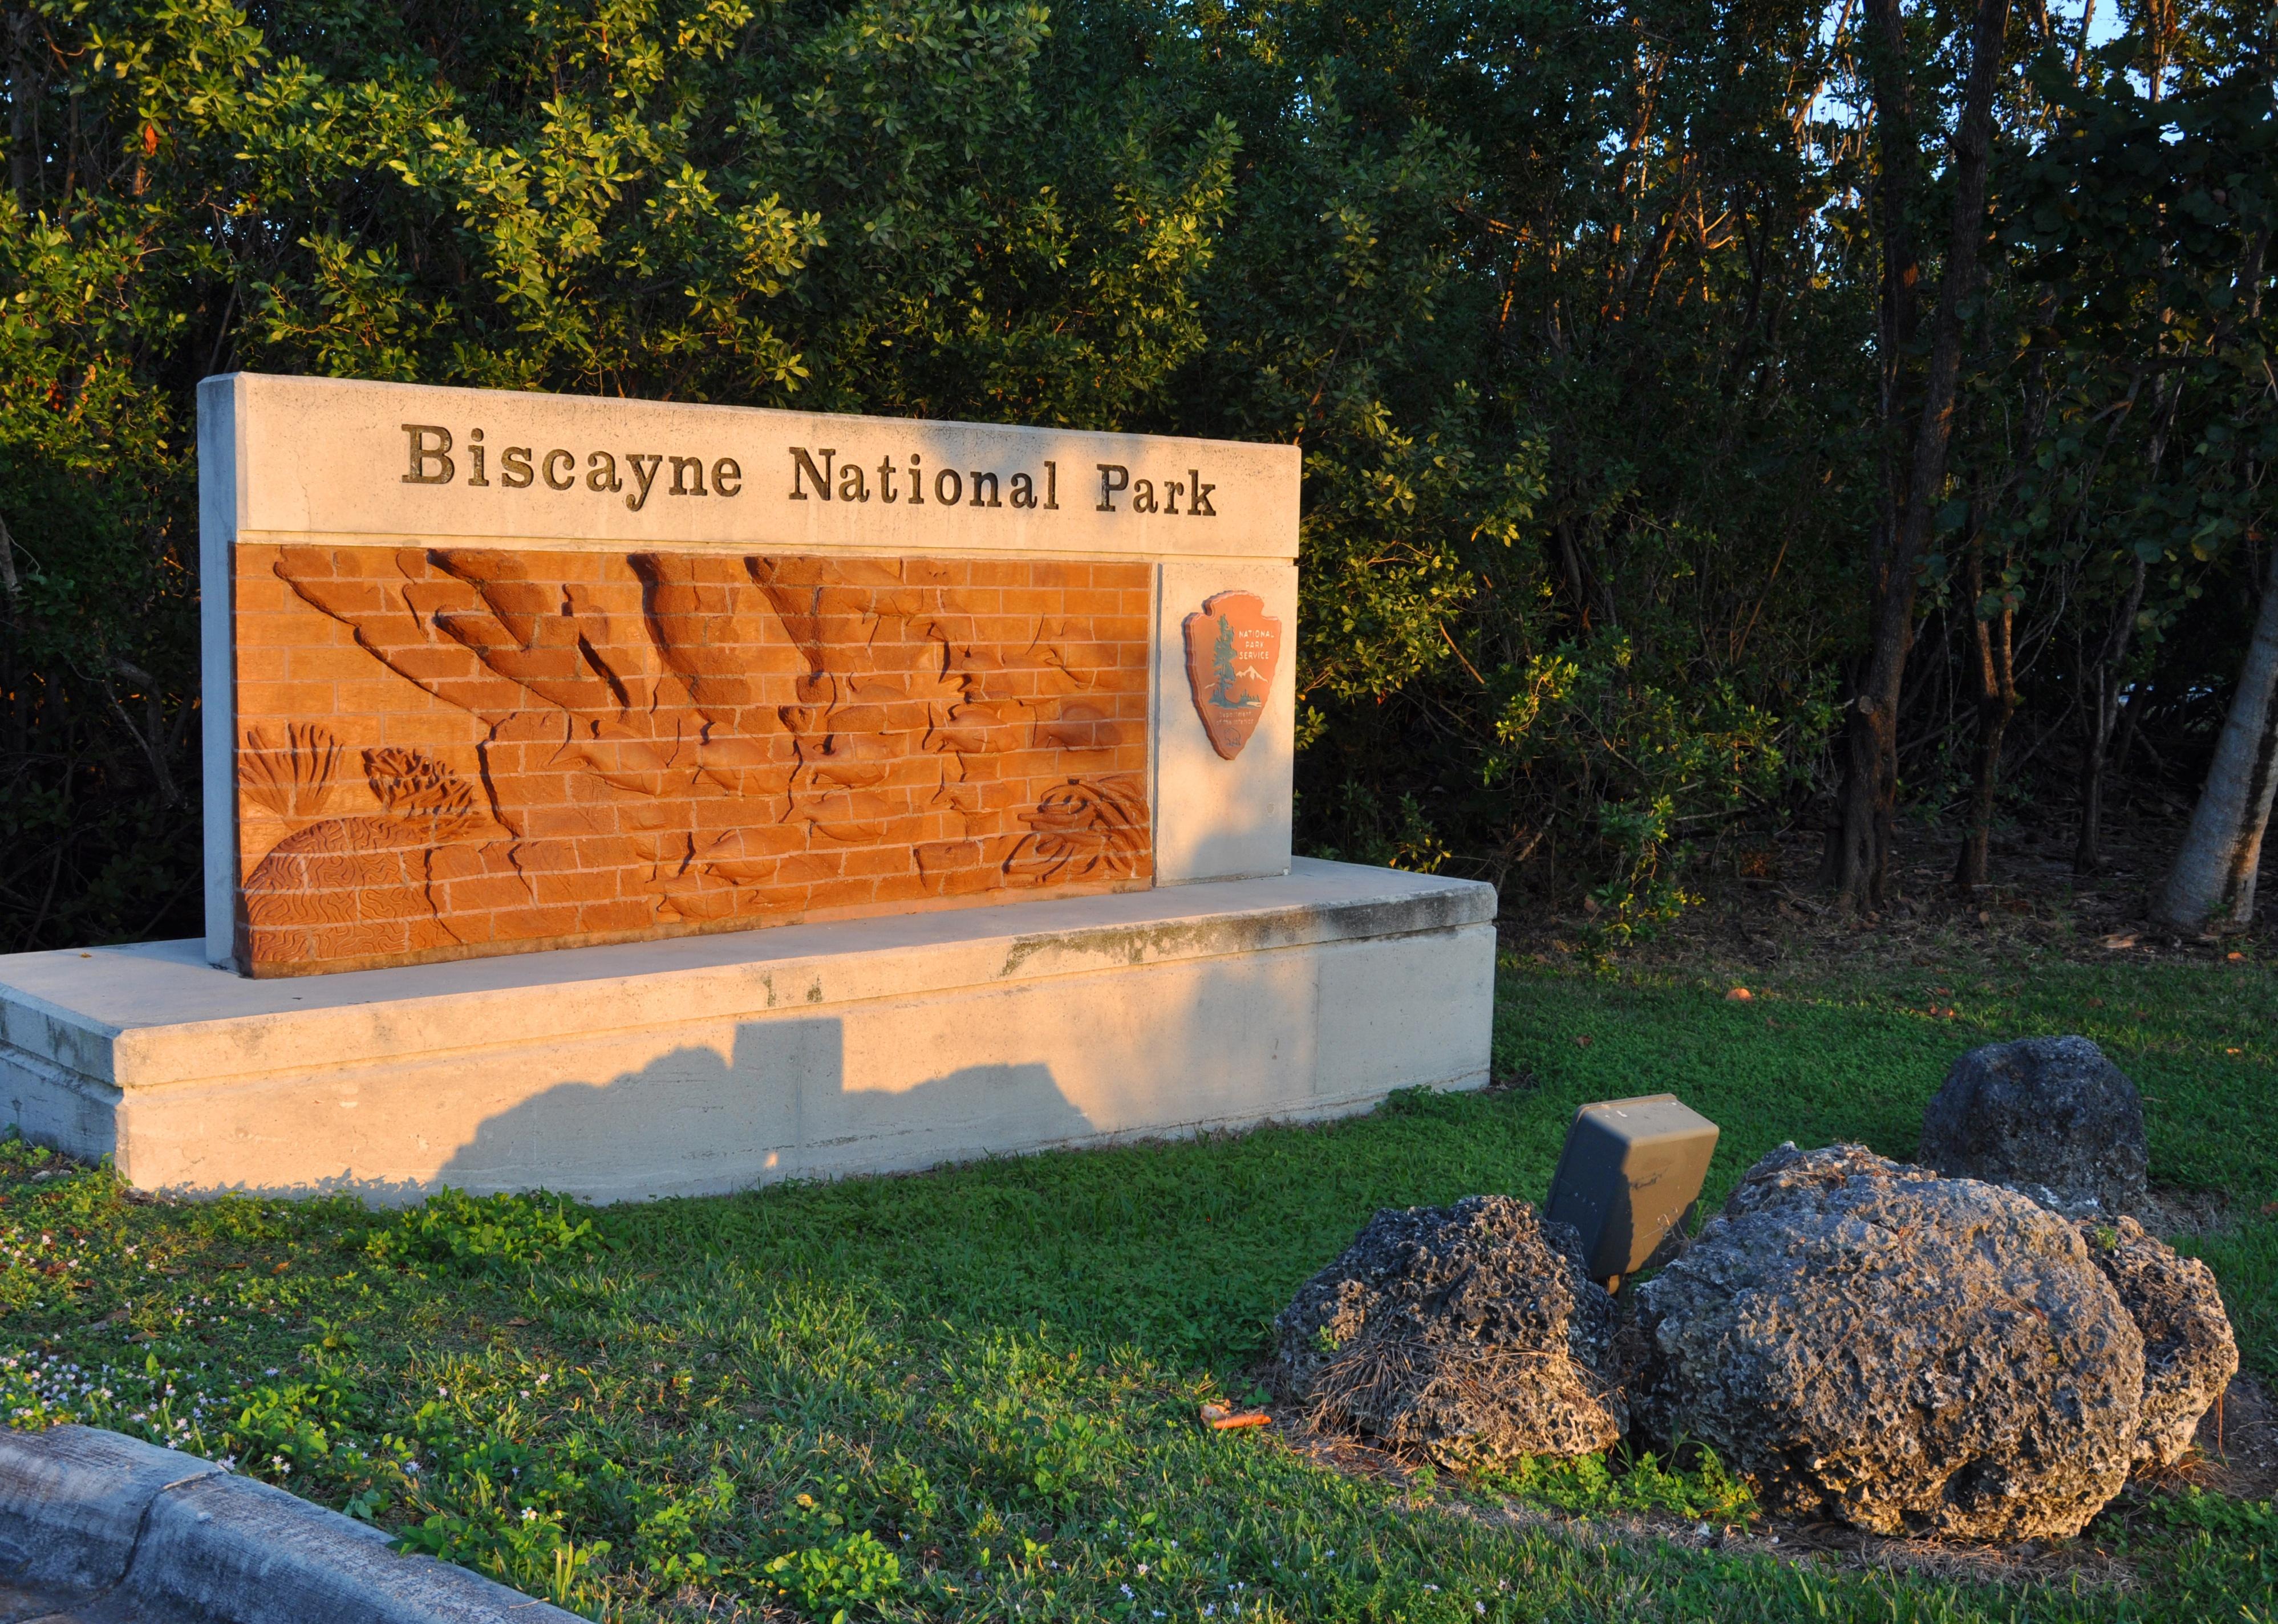 Sign of Biscayne National Park.